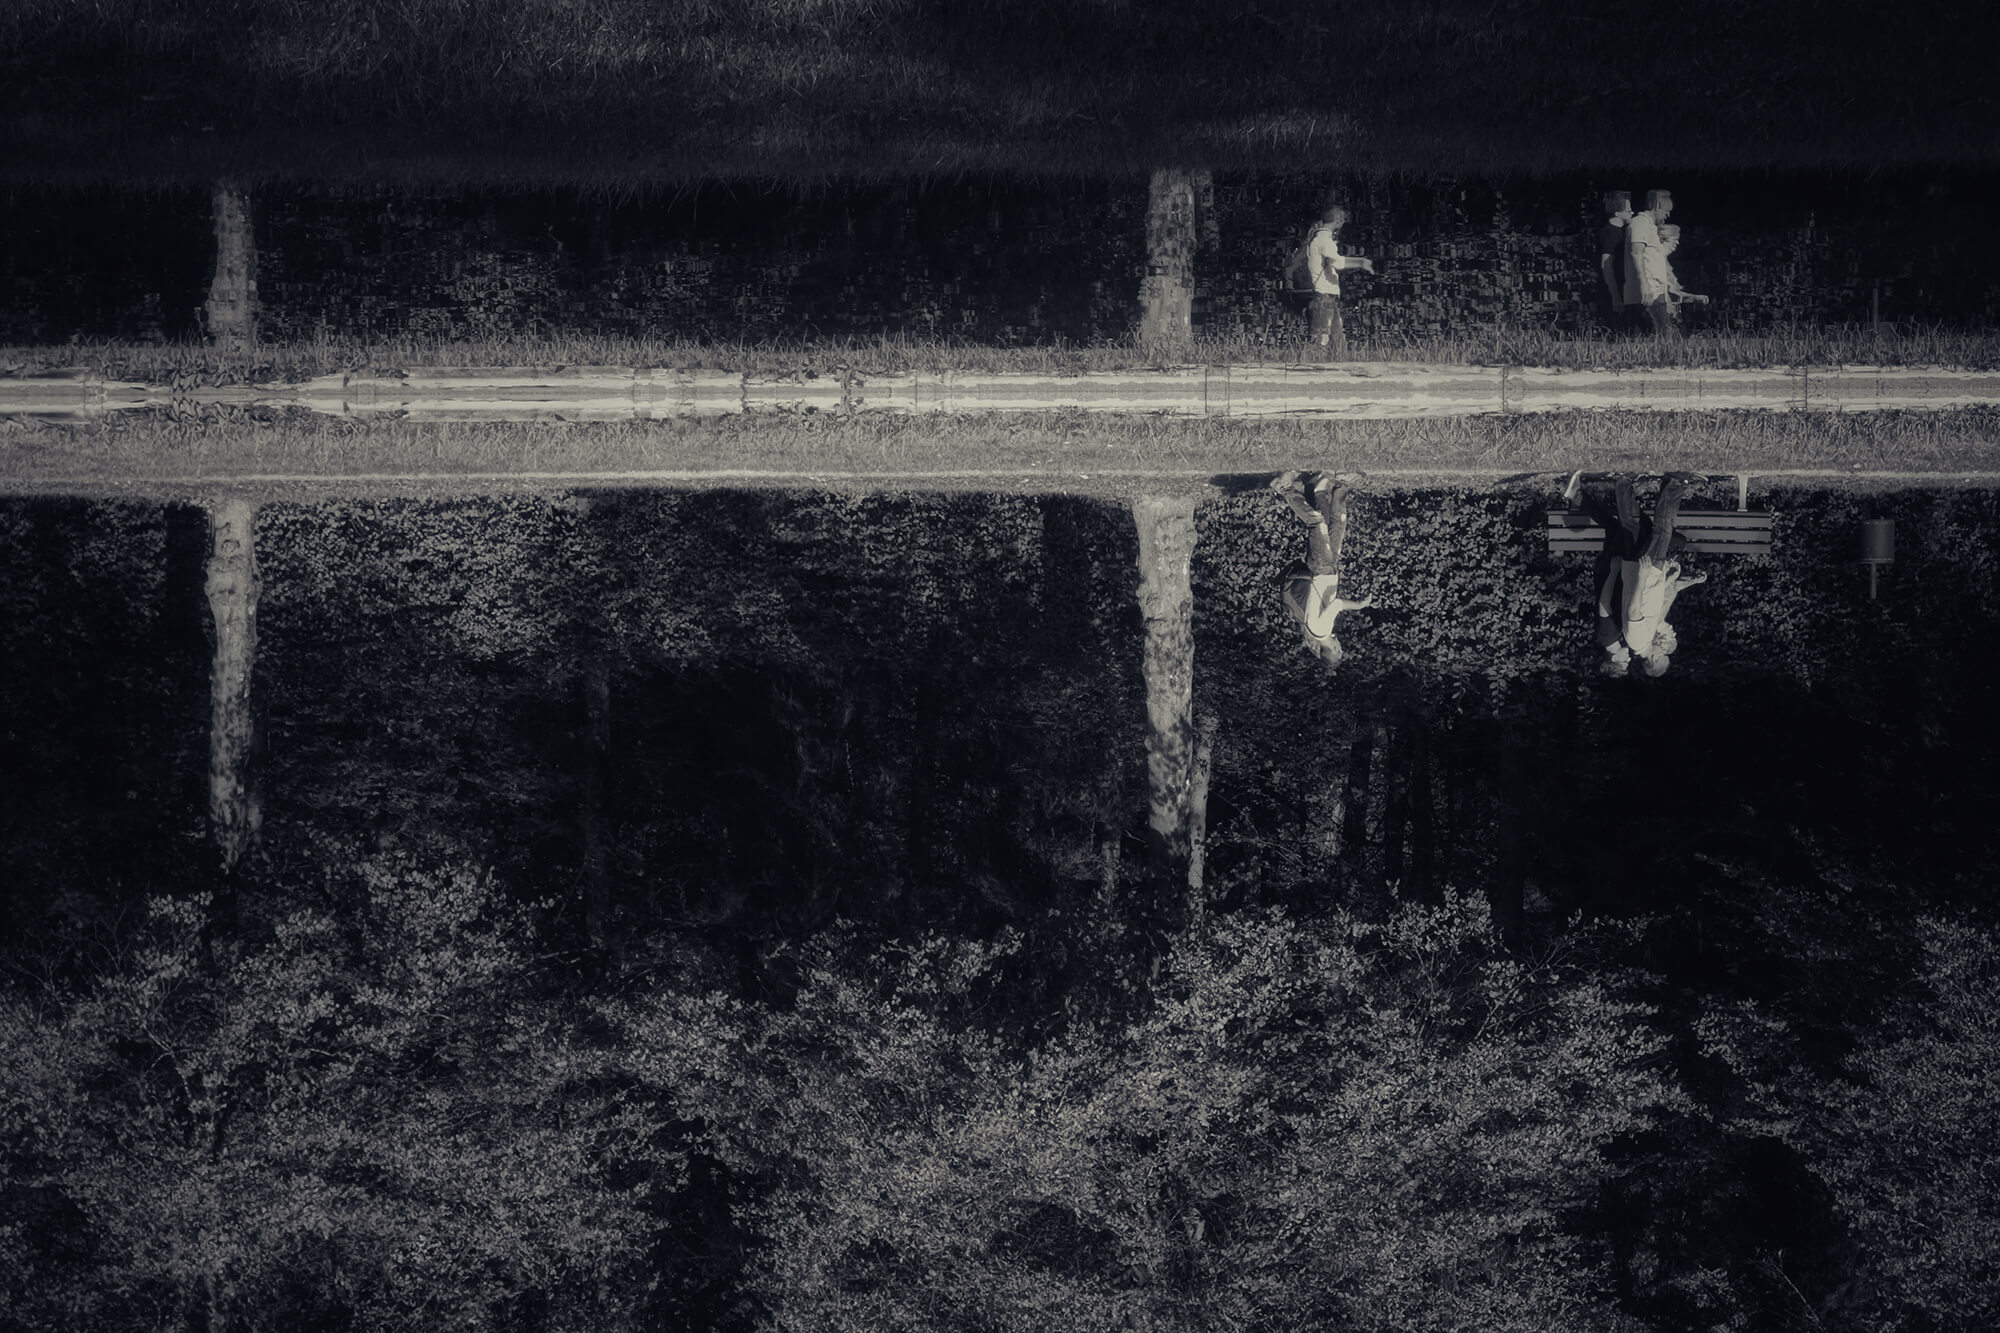 Schwarz-Weiß Foto über einen See hinweg, am anderen Ufer spiegeln sich Spaziergänger